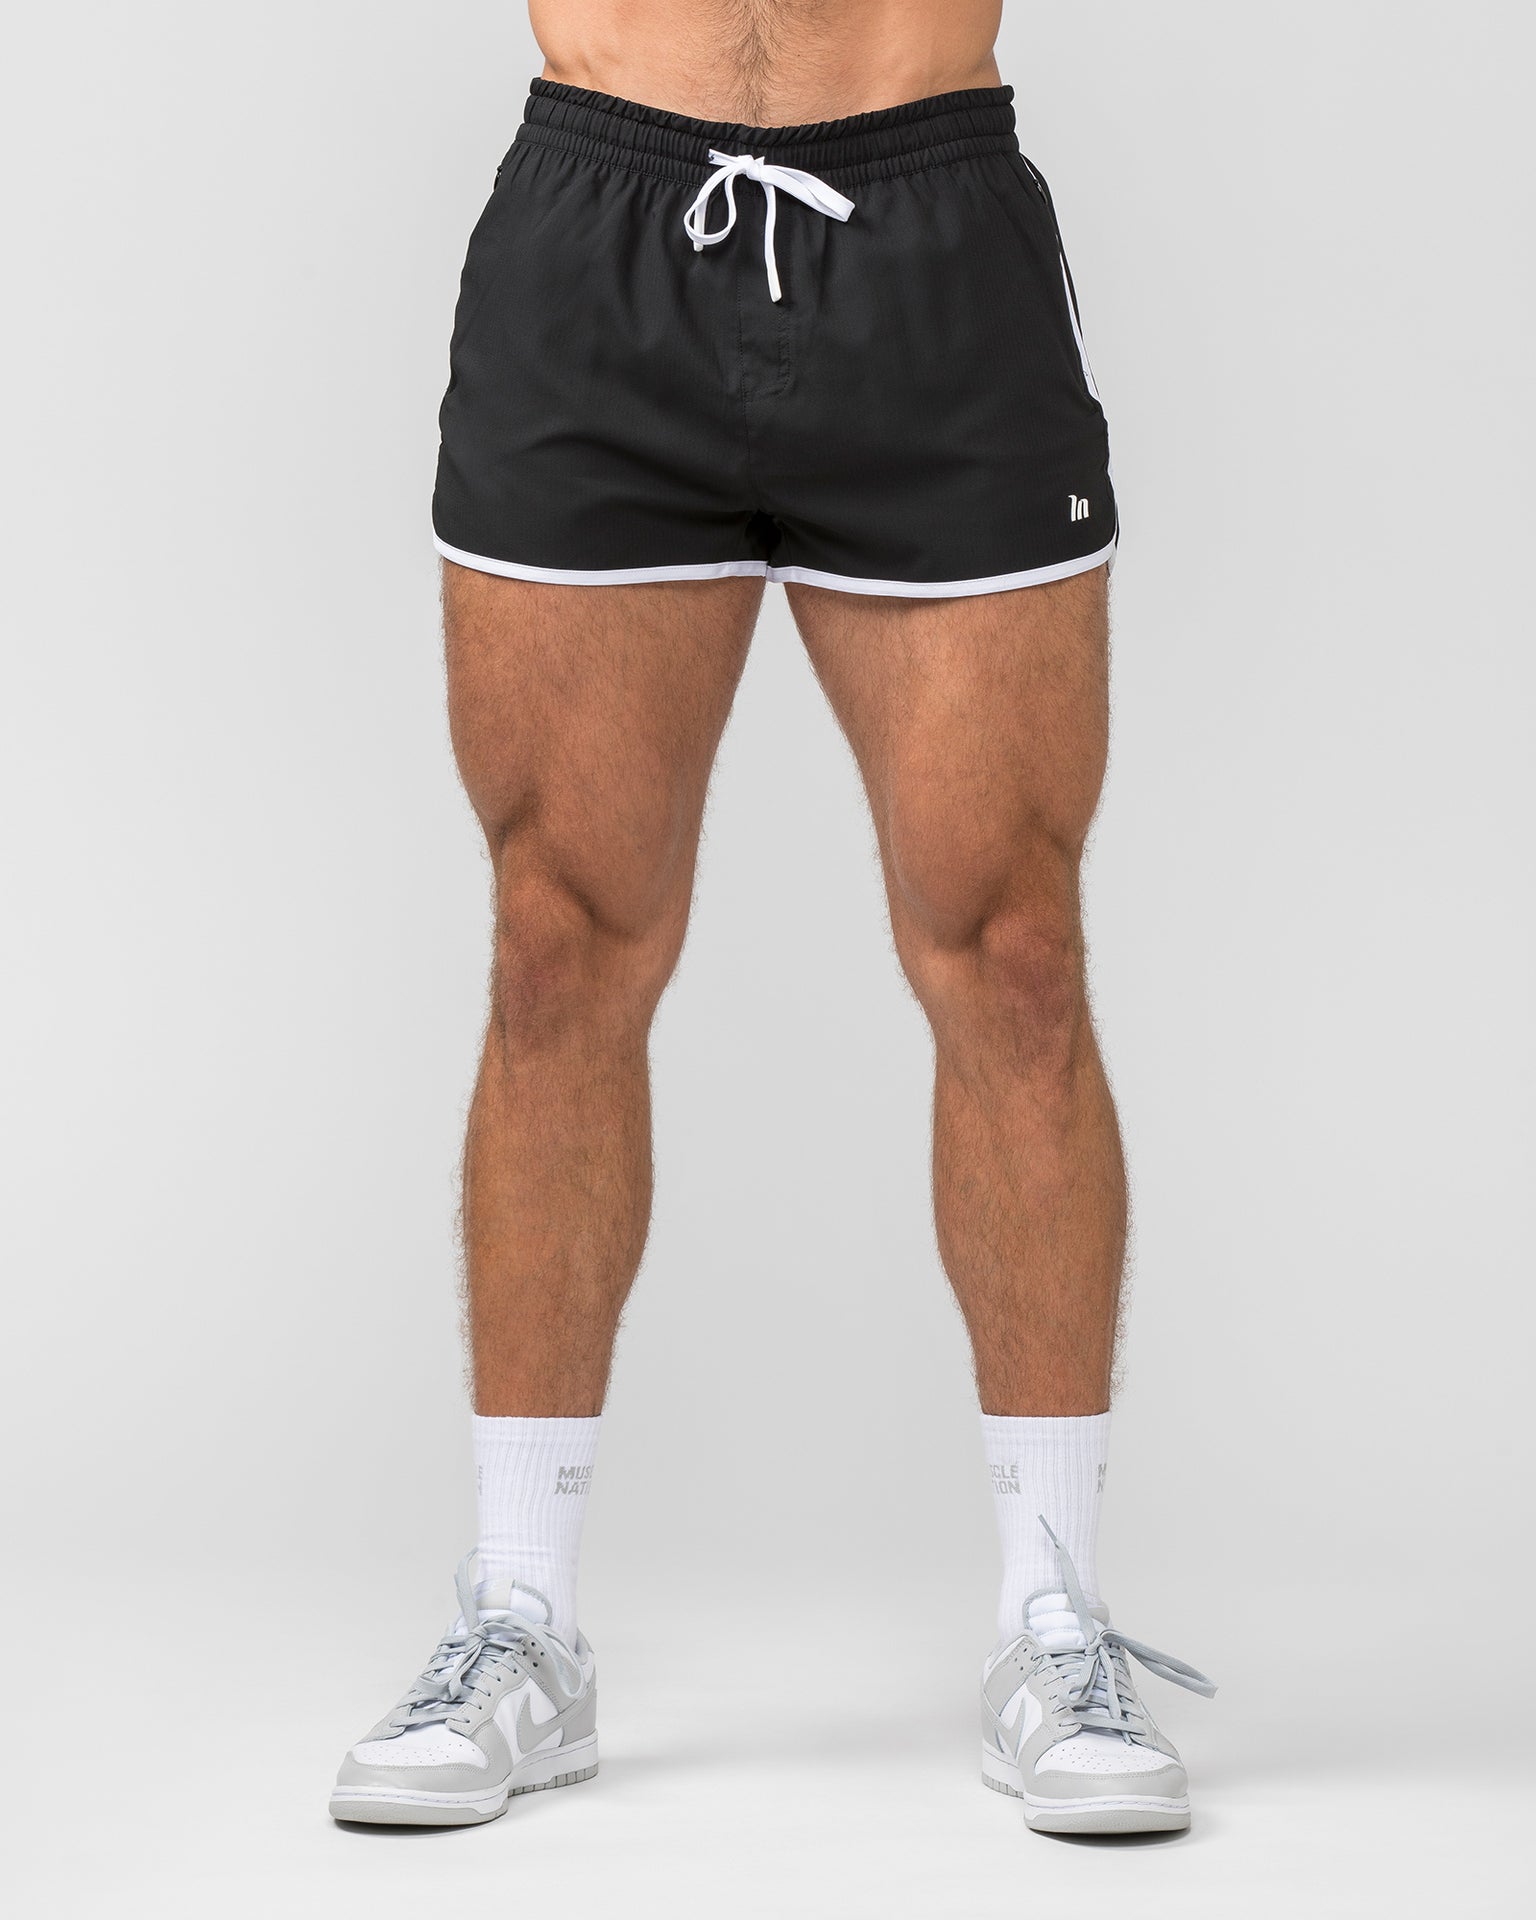 Muscle Nation Gym Shorts Retro Shorts - Black